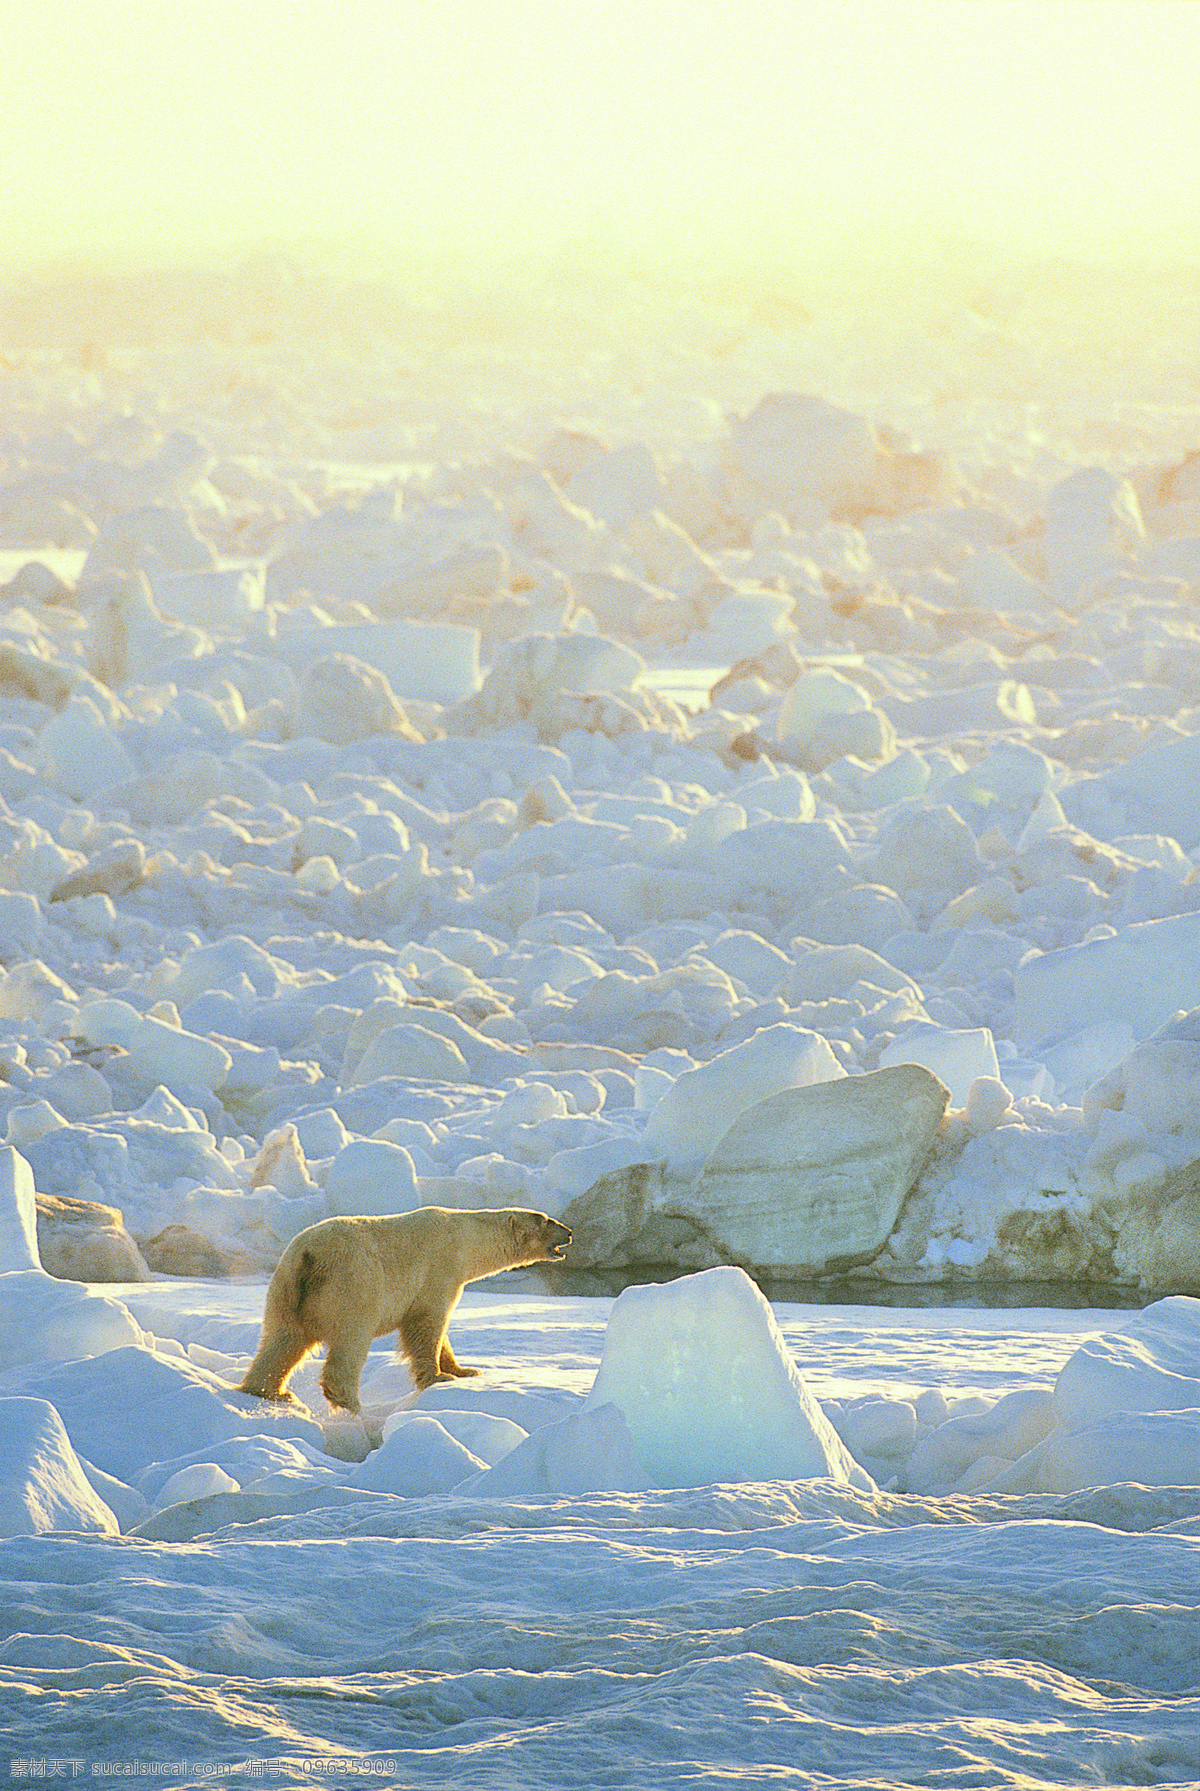 冰山 北极 冰川 北极熊 海洋 天空 摄影图 高精图 自然景观 摄影图库